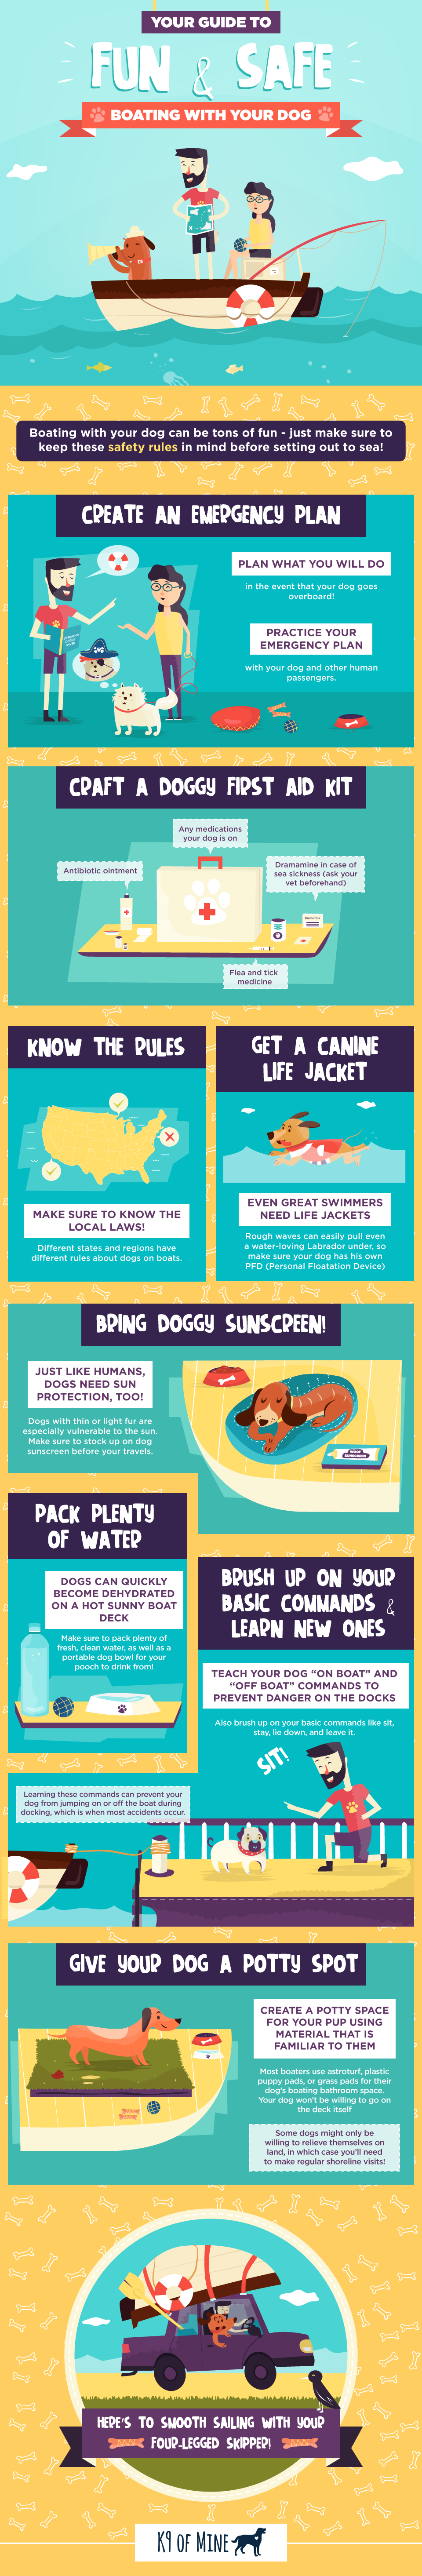 sécurité nautique pour chiens